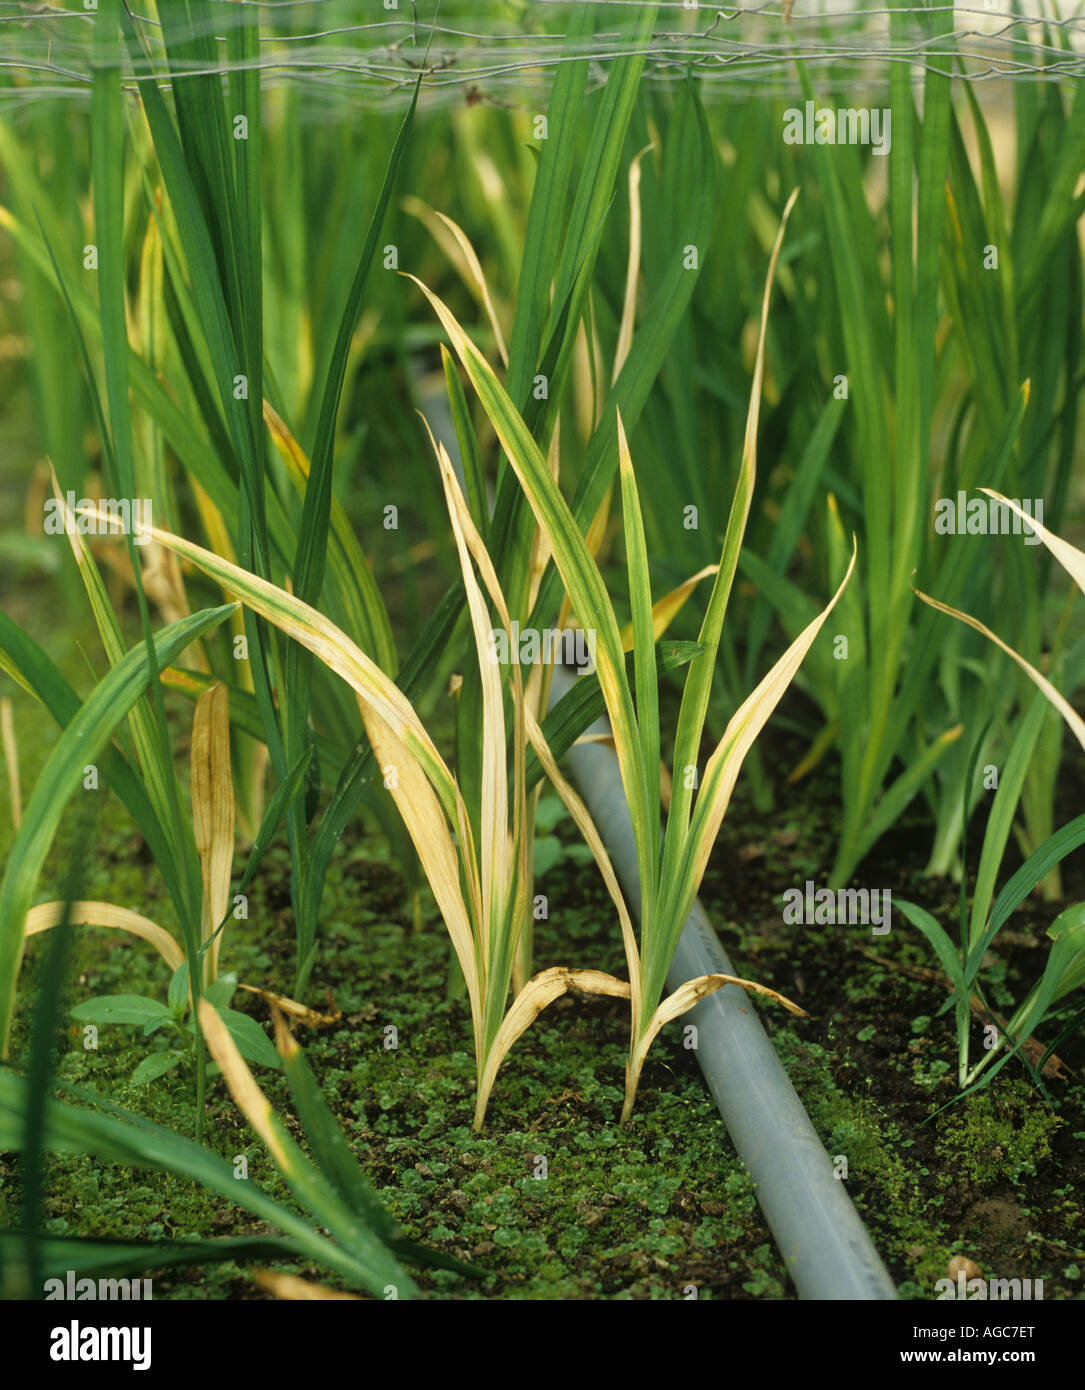 La podredumbre basal Fusarium oxysporum daños a las plantas cultivadas en invernadero fresia Foto de stock